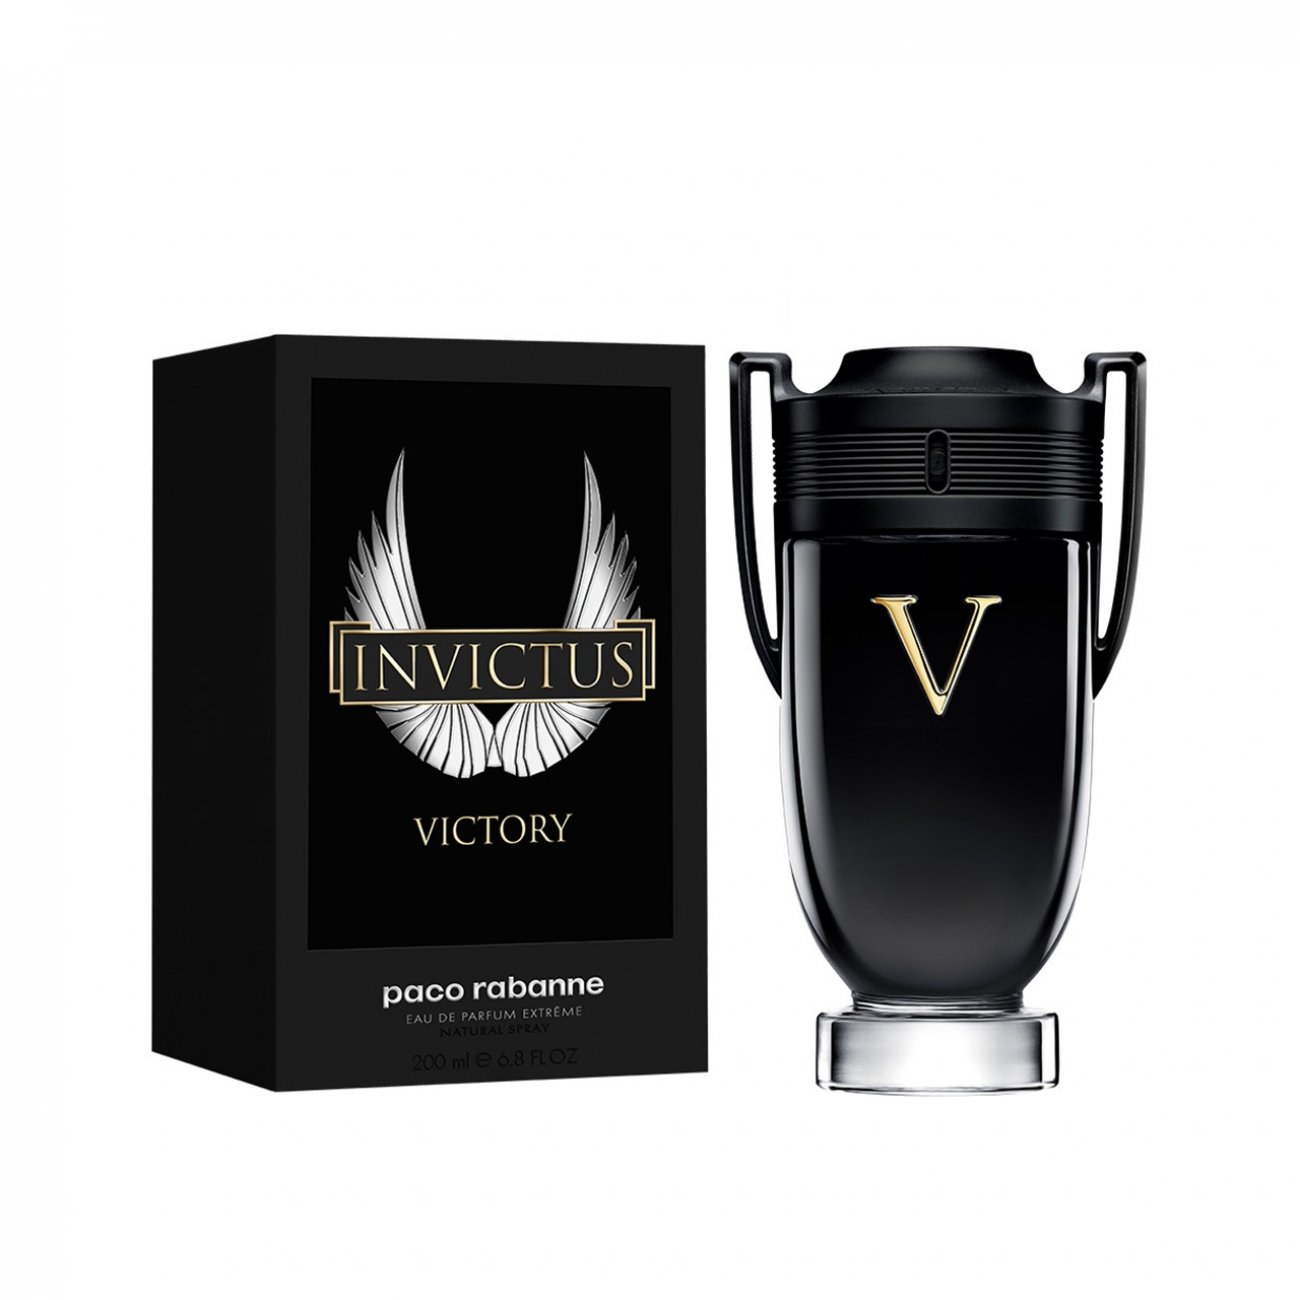 Buy Paco Rabanne Invictus Victory Eau De Parfum Extrême 200ml (6.8fl oz) ·